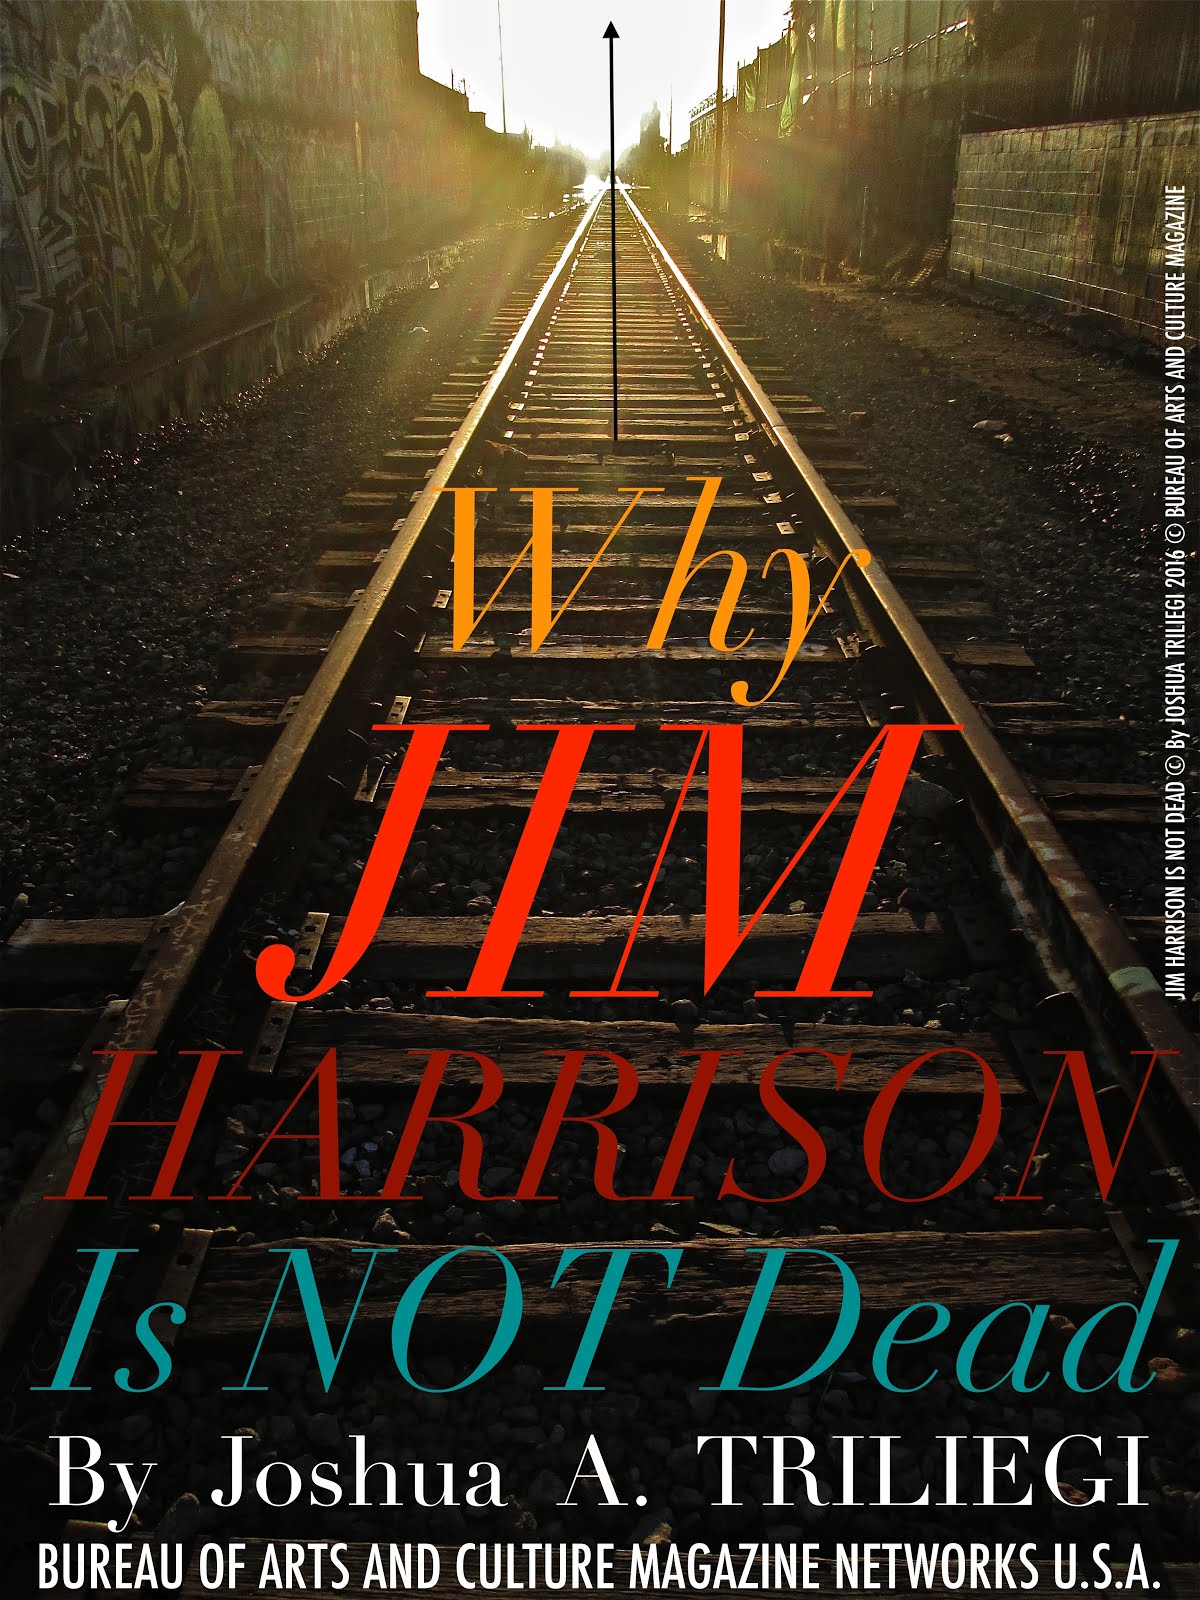 JIM HARRISON is Not DEAD...